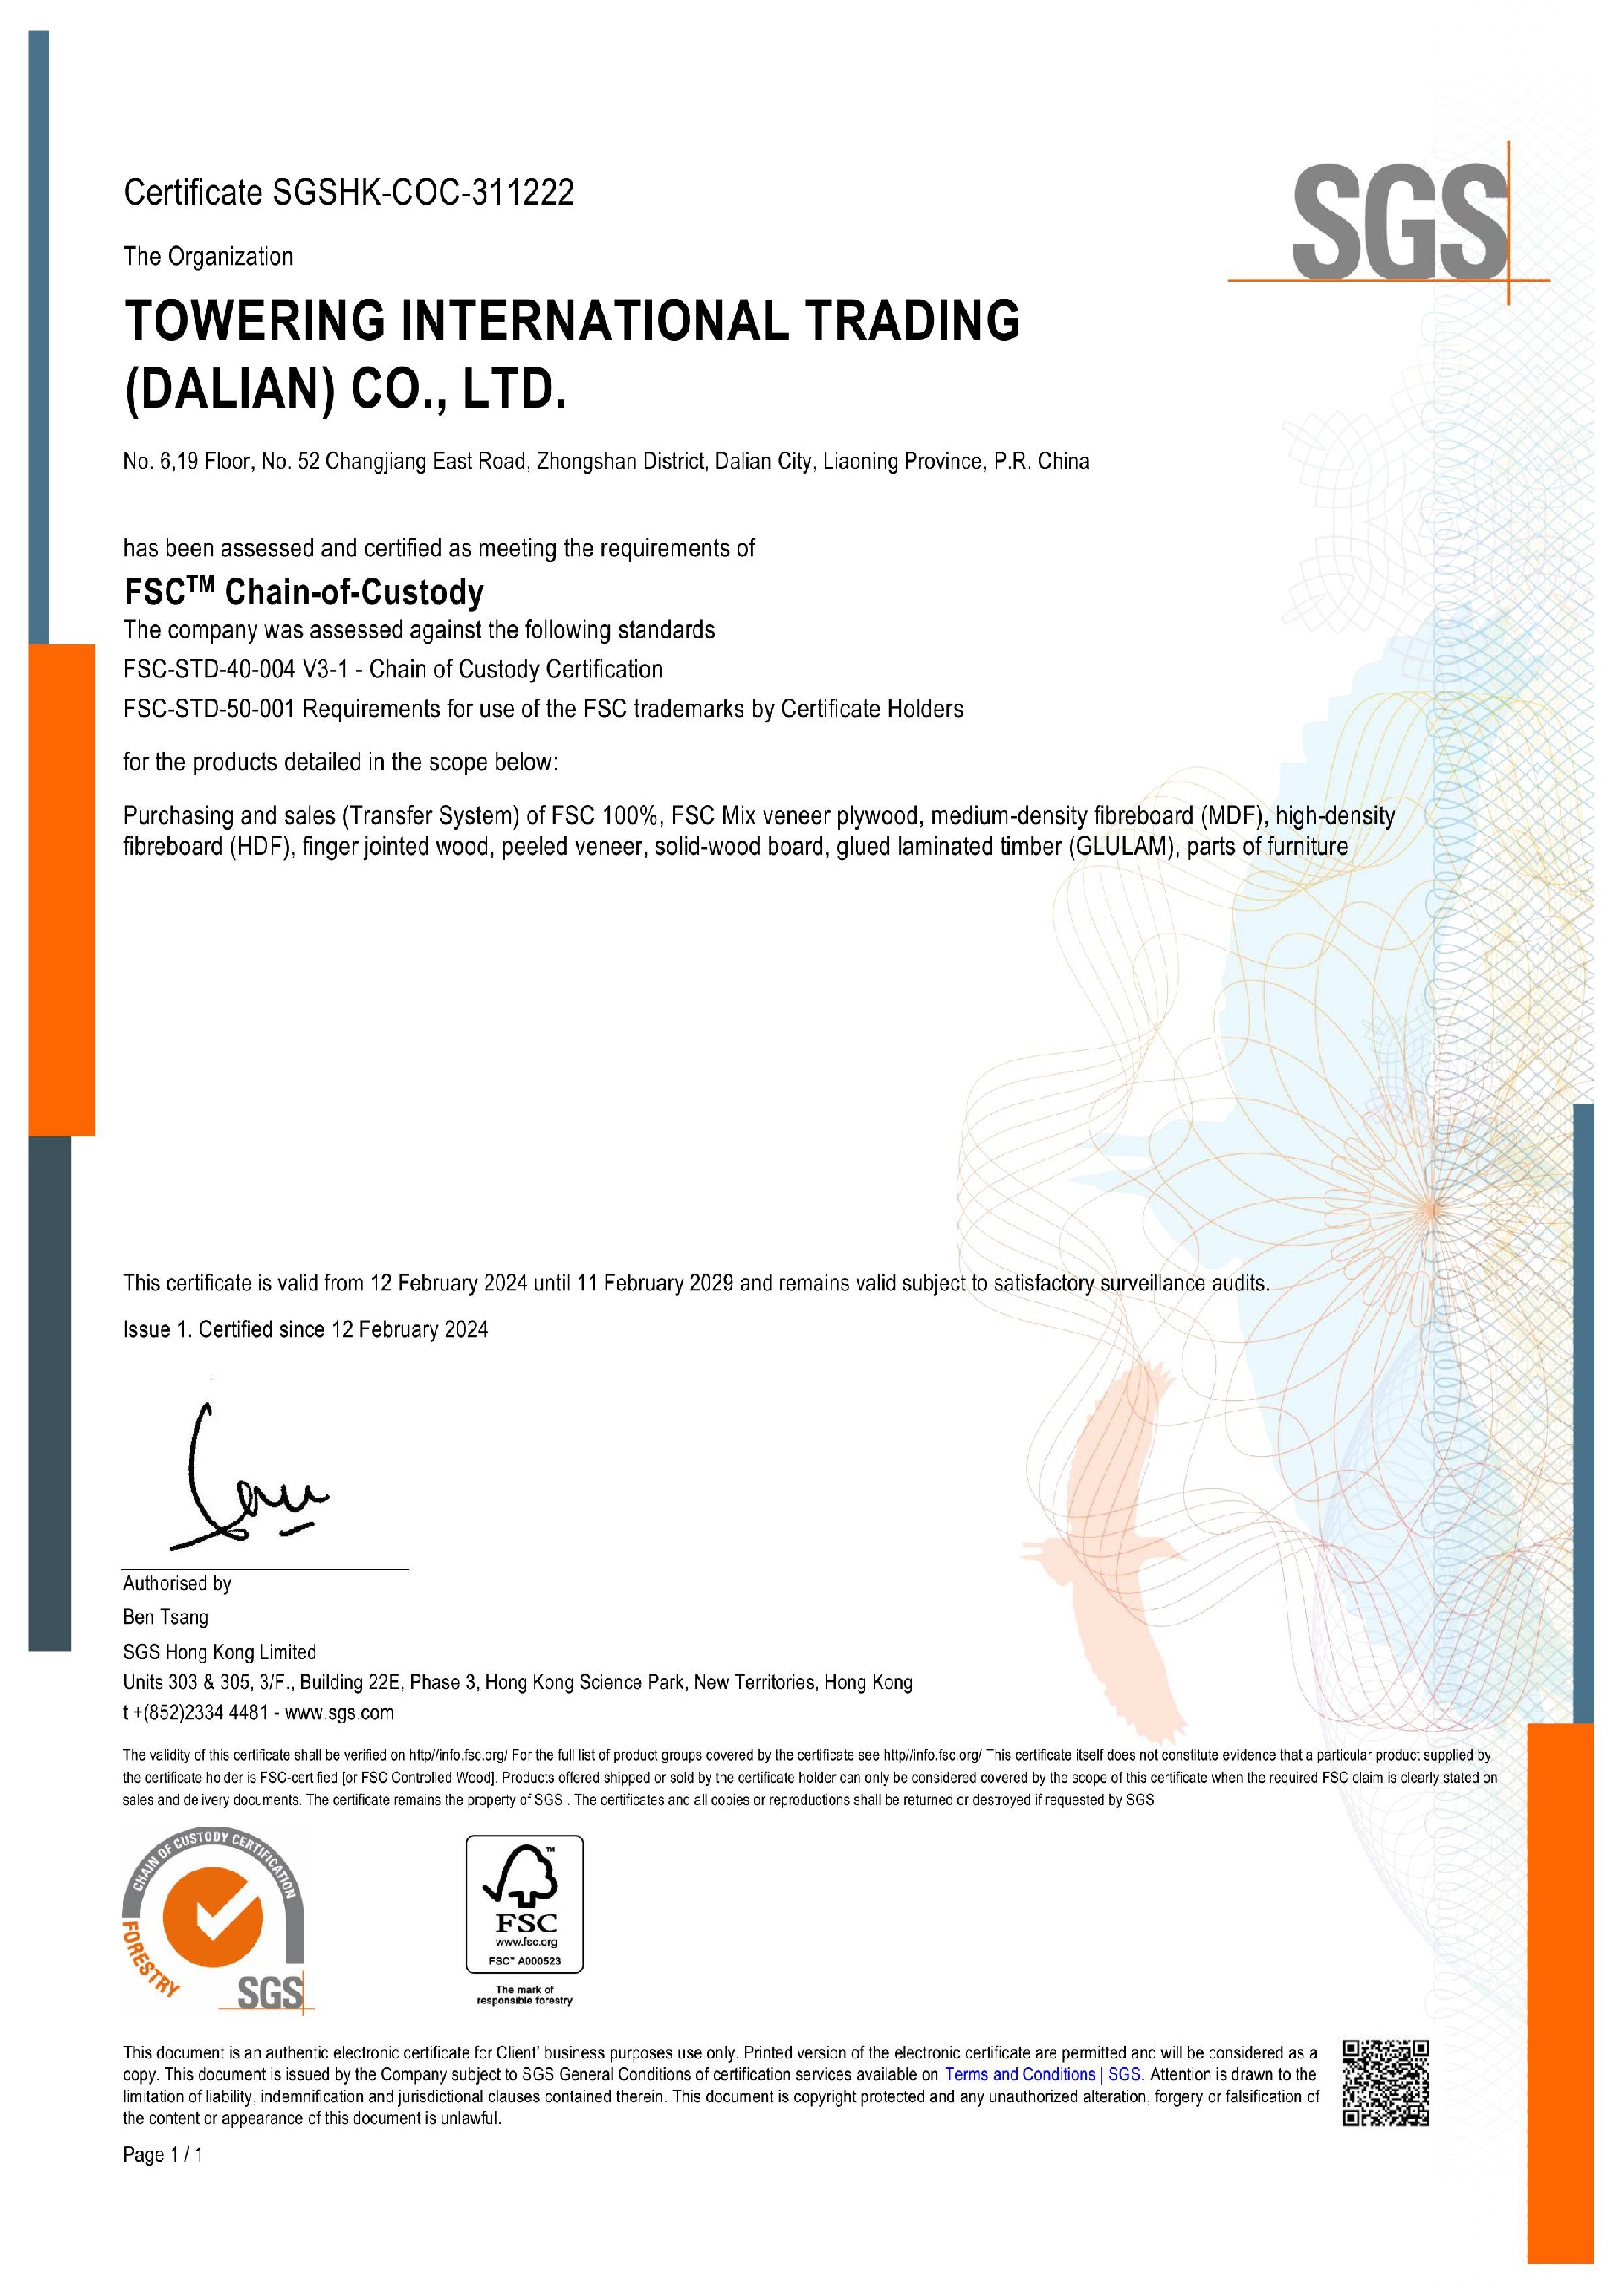 FSC certificate.jpg